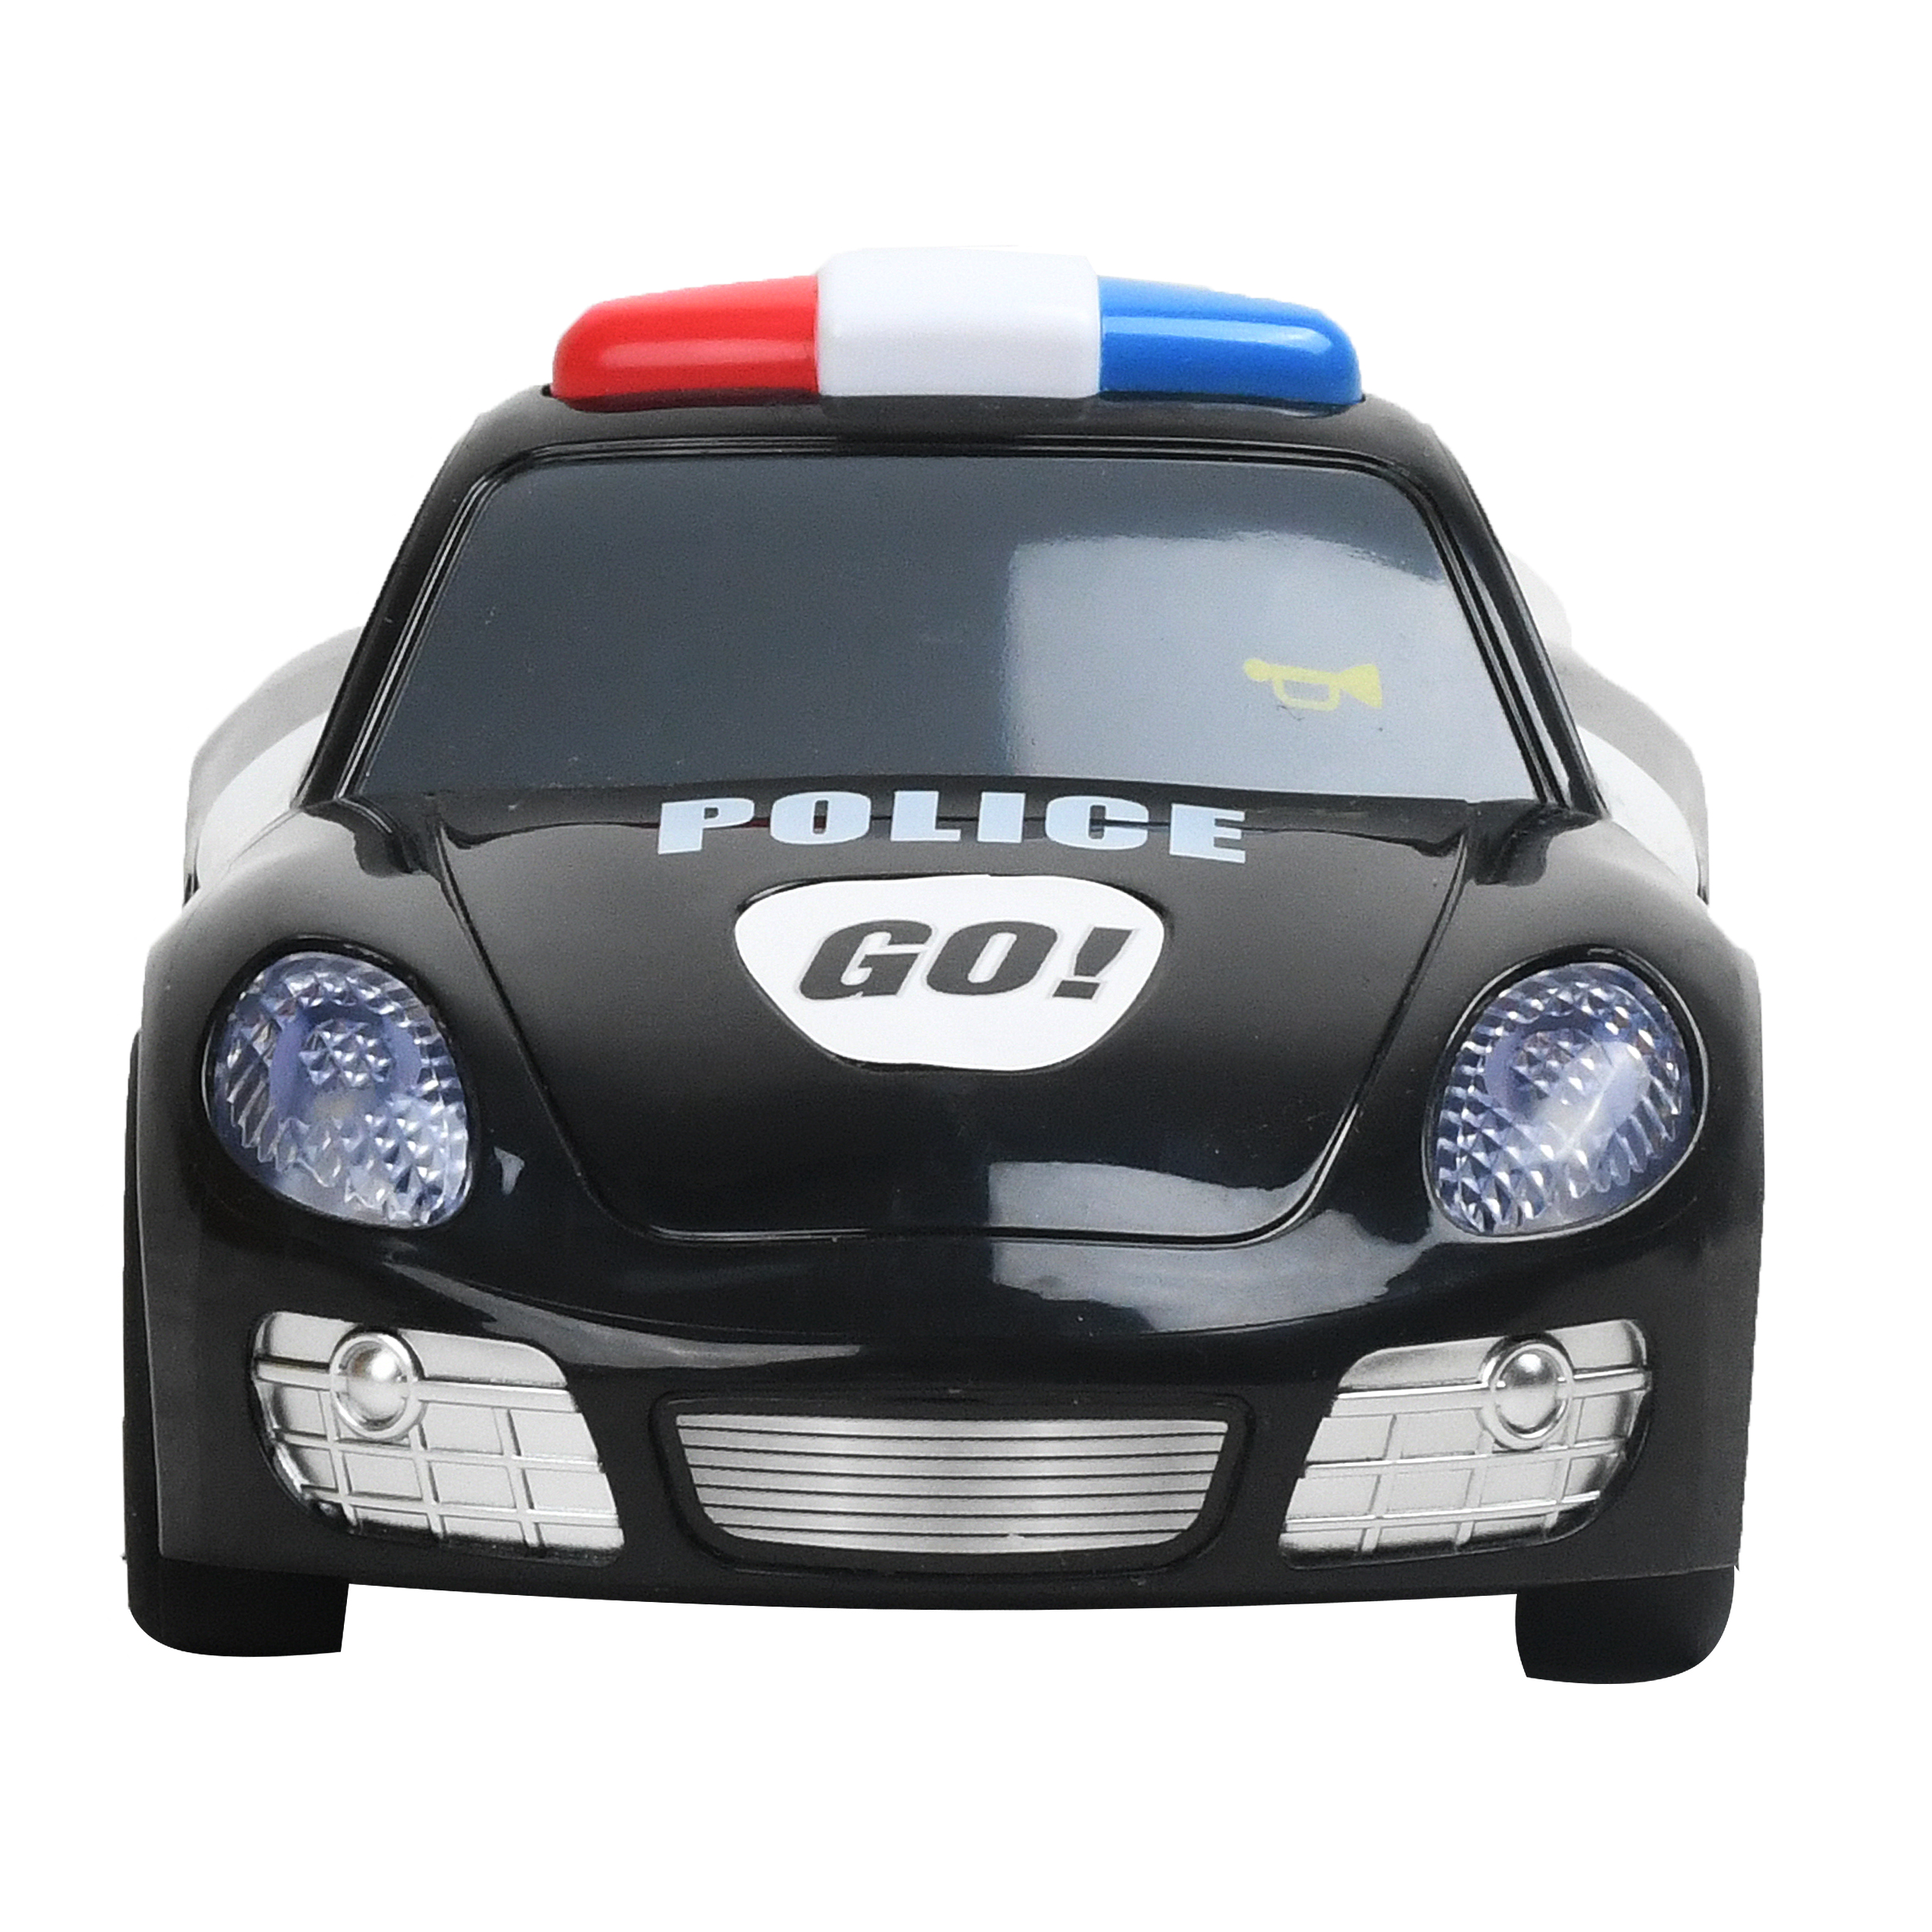 ماشین بازی هولا مدل پلیس 6106A